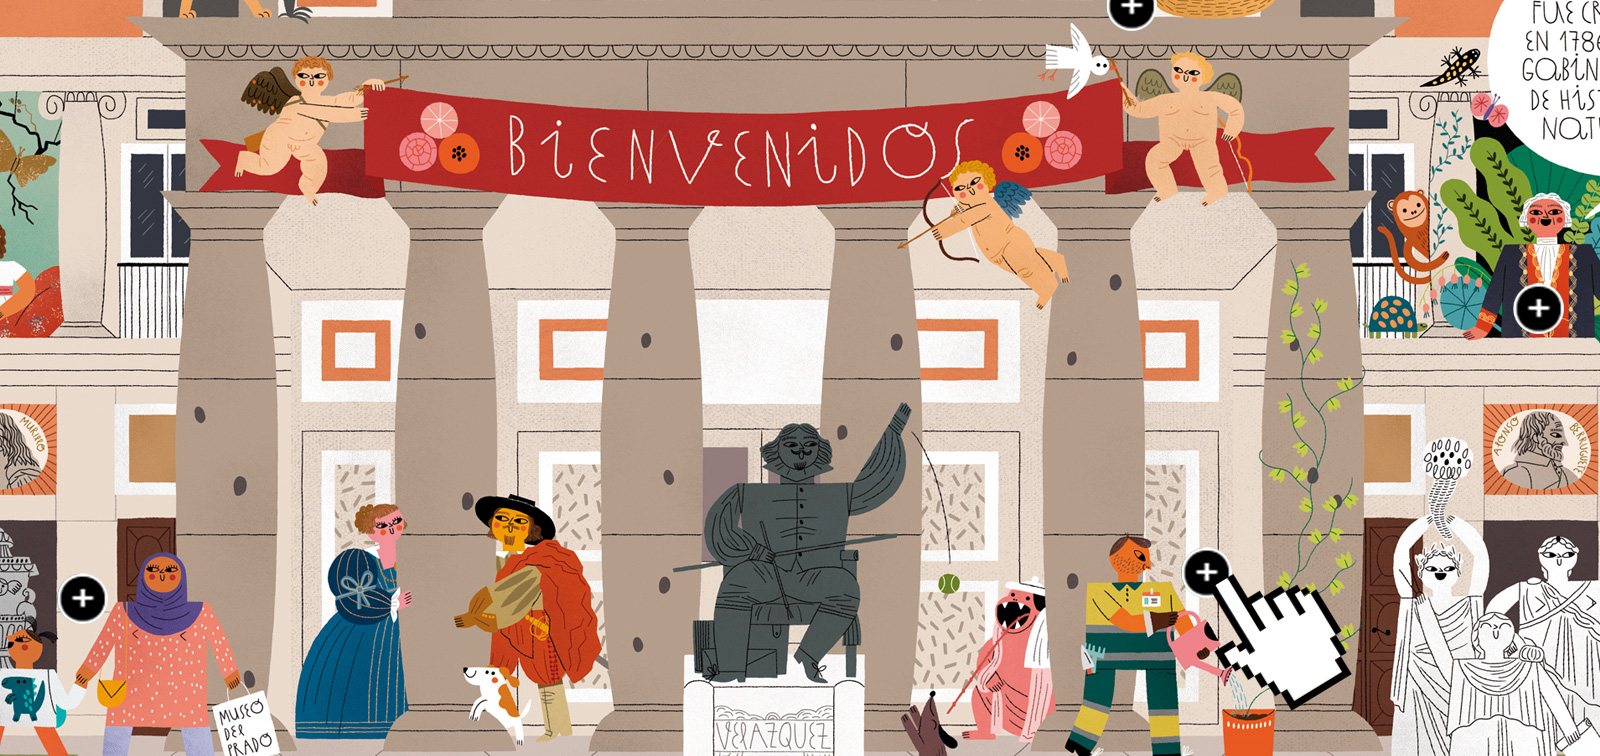 Día Internacional de los Museos en el Prado